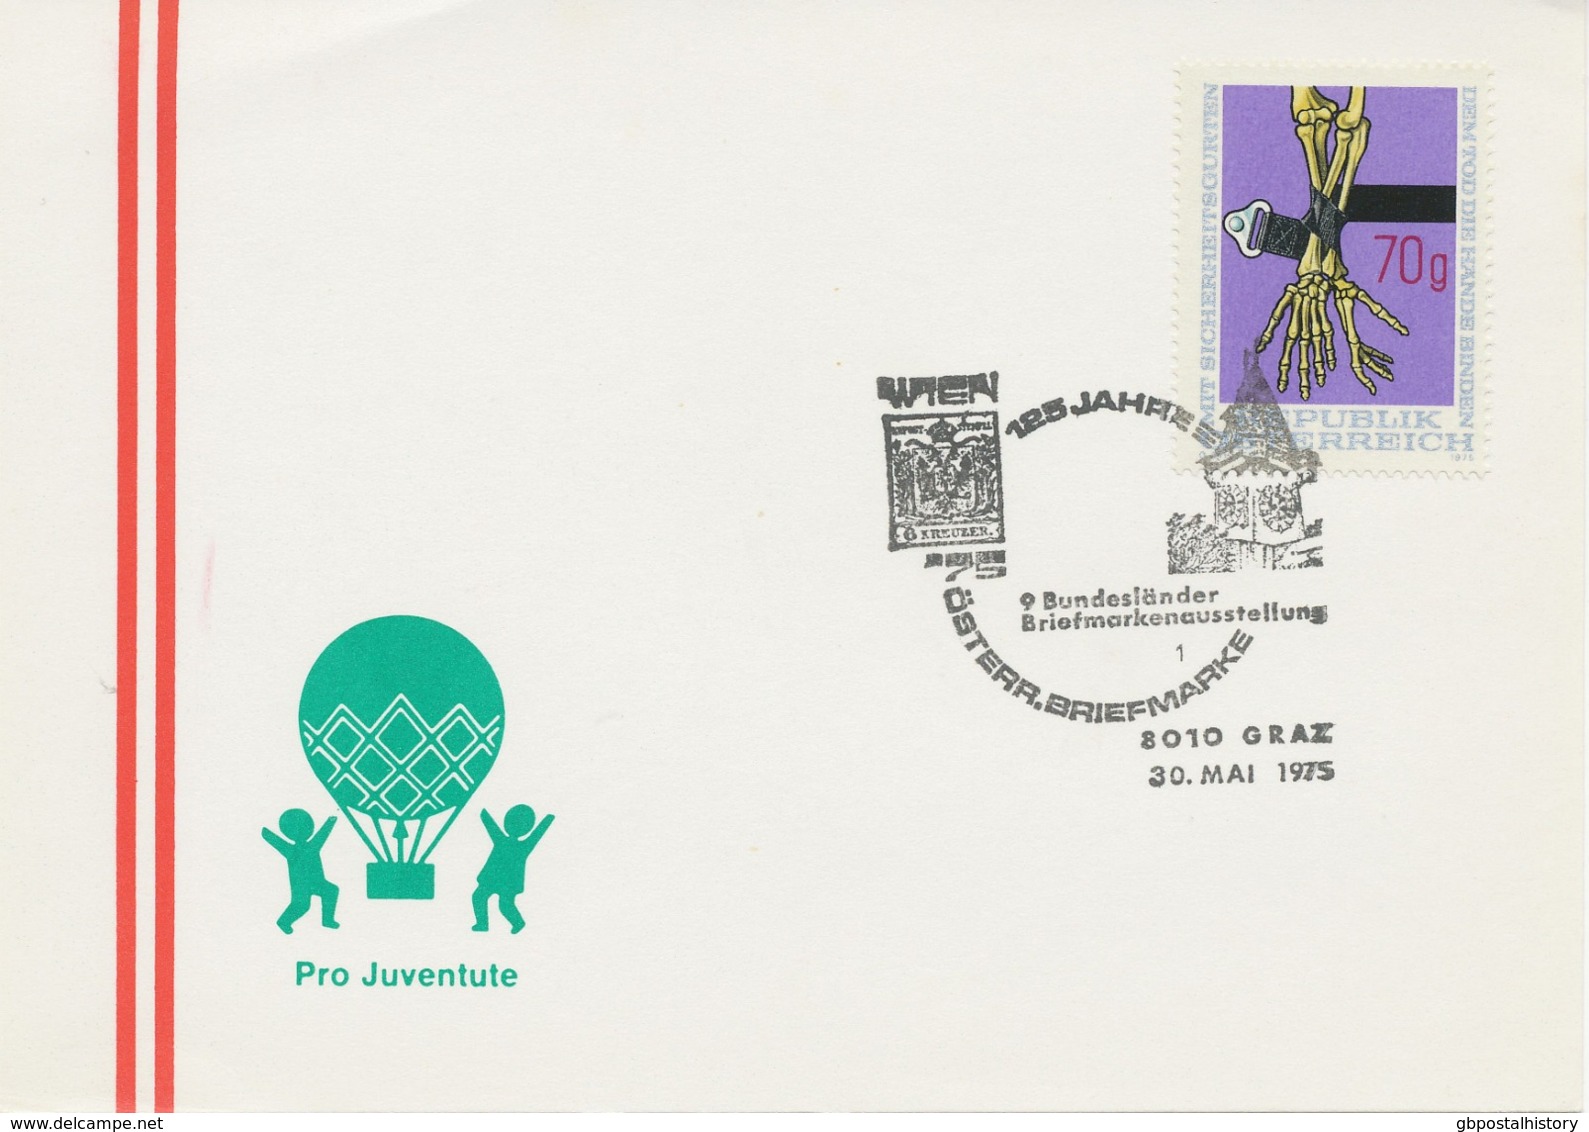 ÖSTERREICH 1975 8010 GRAZ 125 Jahre Österr. Briefmarke - 9. Bundesländer Briefmarkenausstellung - Macchine Per Obliterare (EMA)